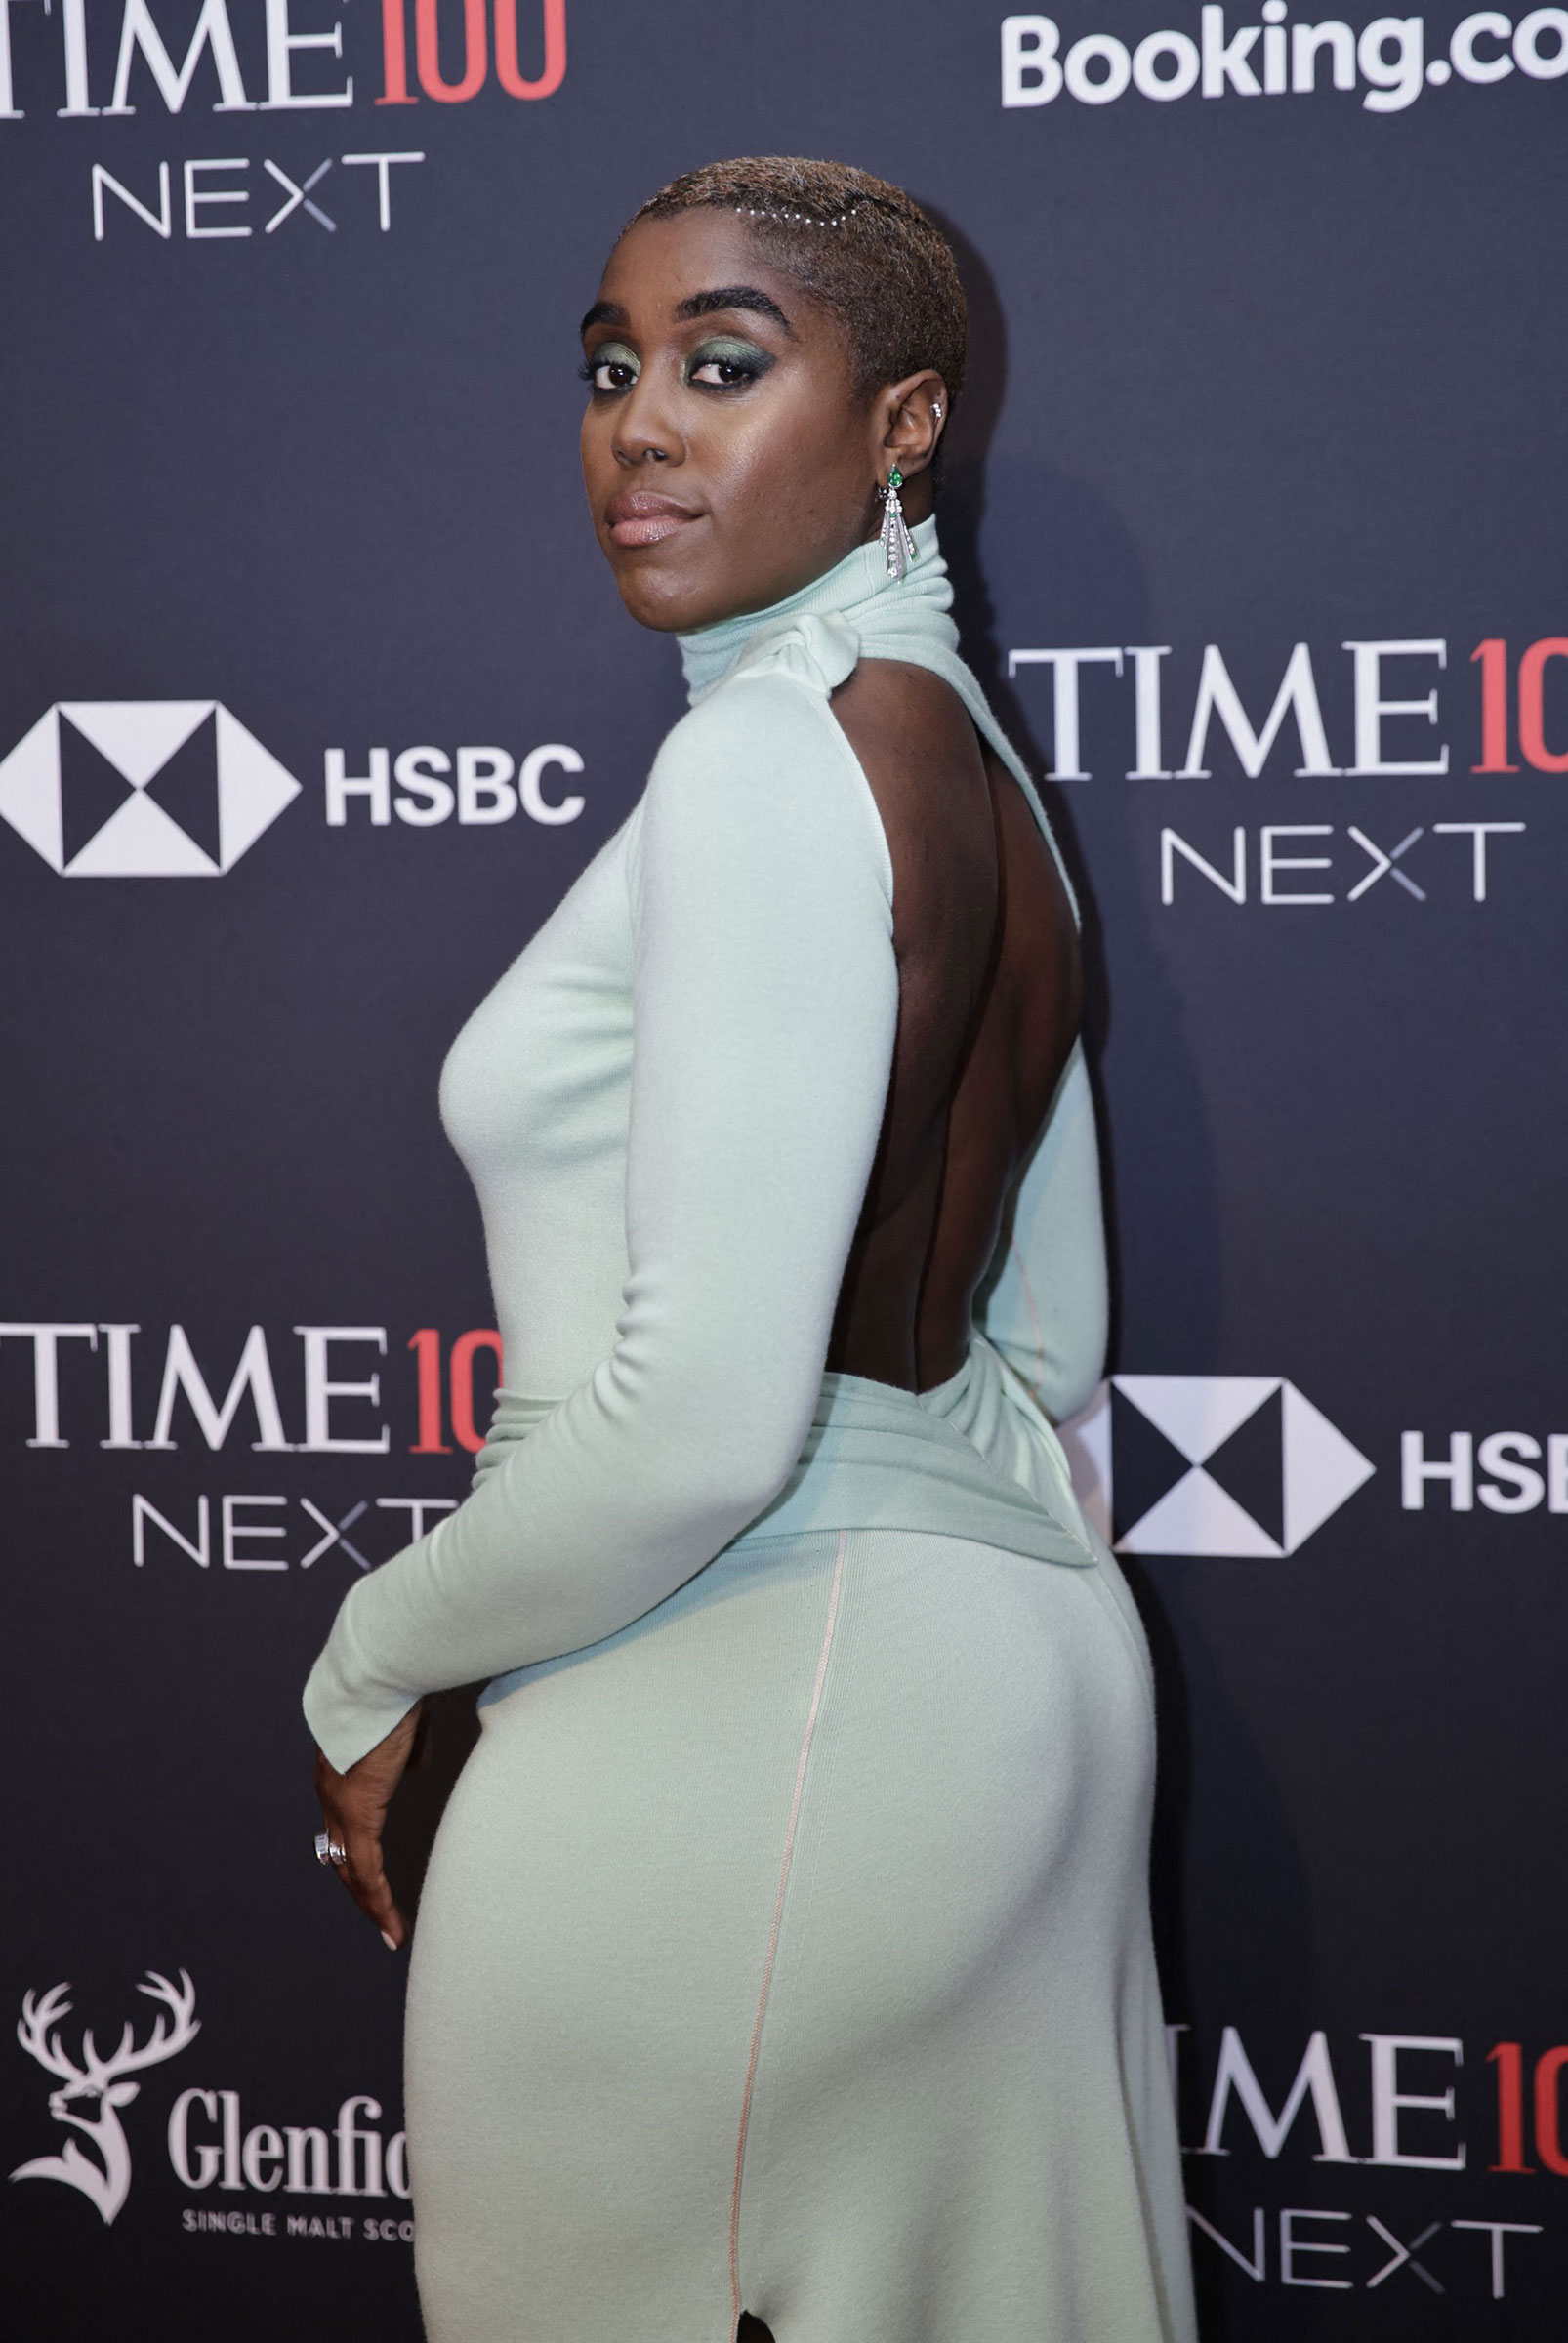 لاشانا لینچ بازیگر در مراسم TIME100 Next Gala در شهر نیویورک در ماه اکتبر شرکت می کند.  25، 2022 (کنا بتانکور - خبرگزاری فرانسه / گتی ایماژ)